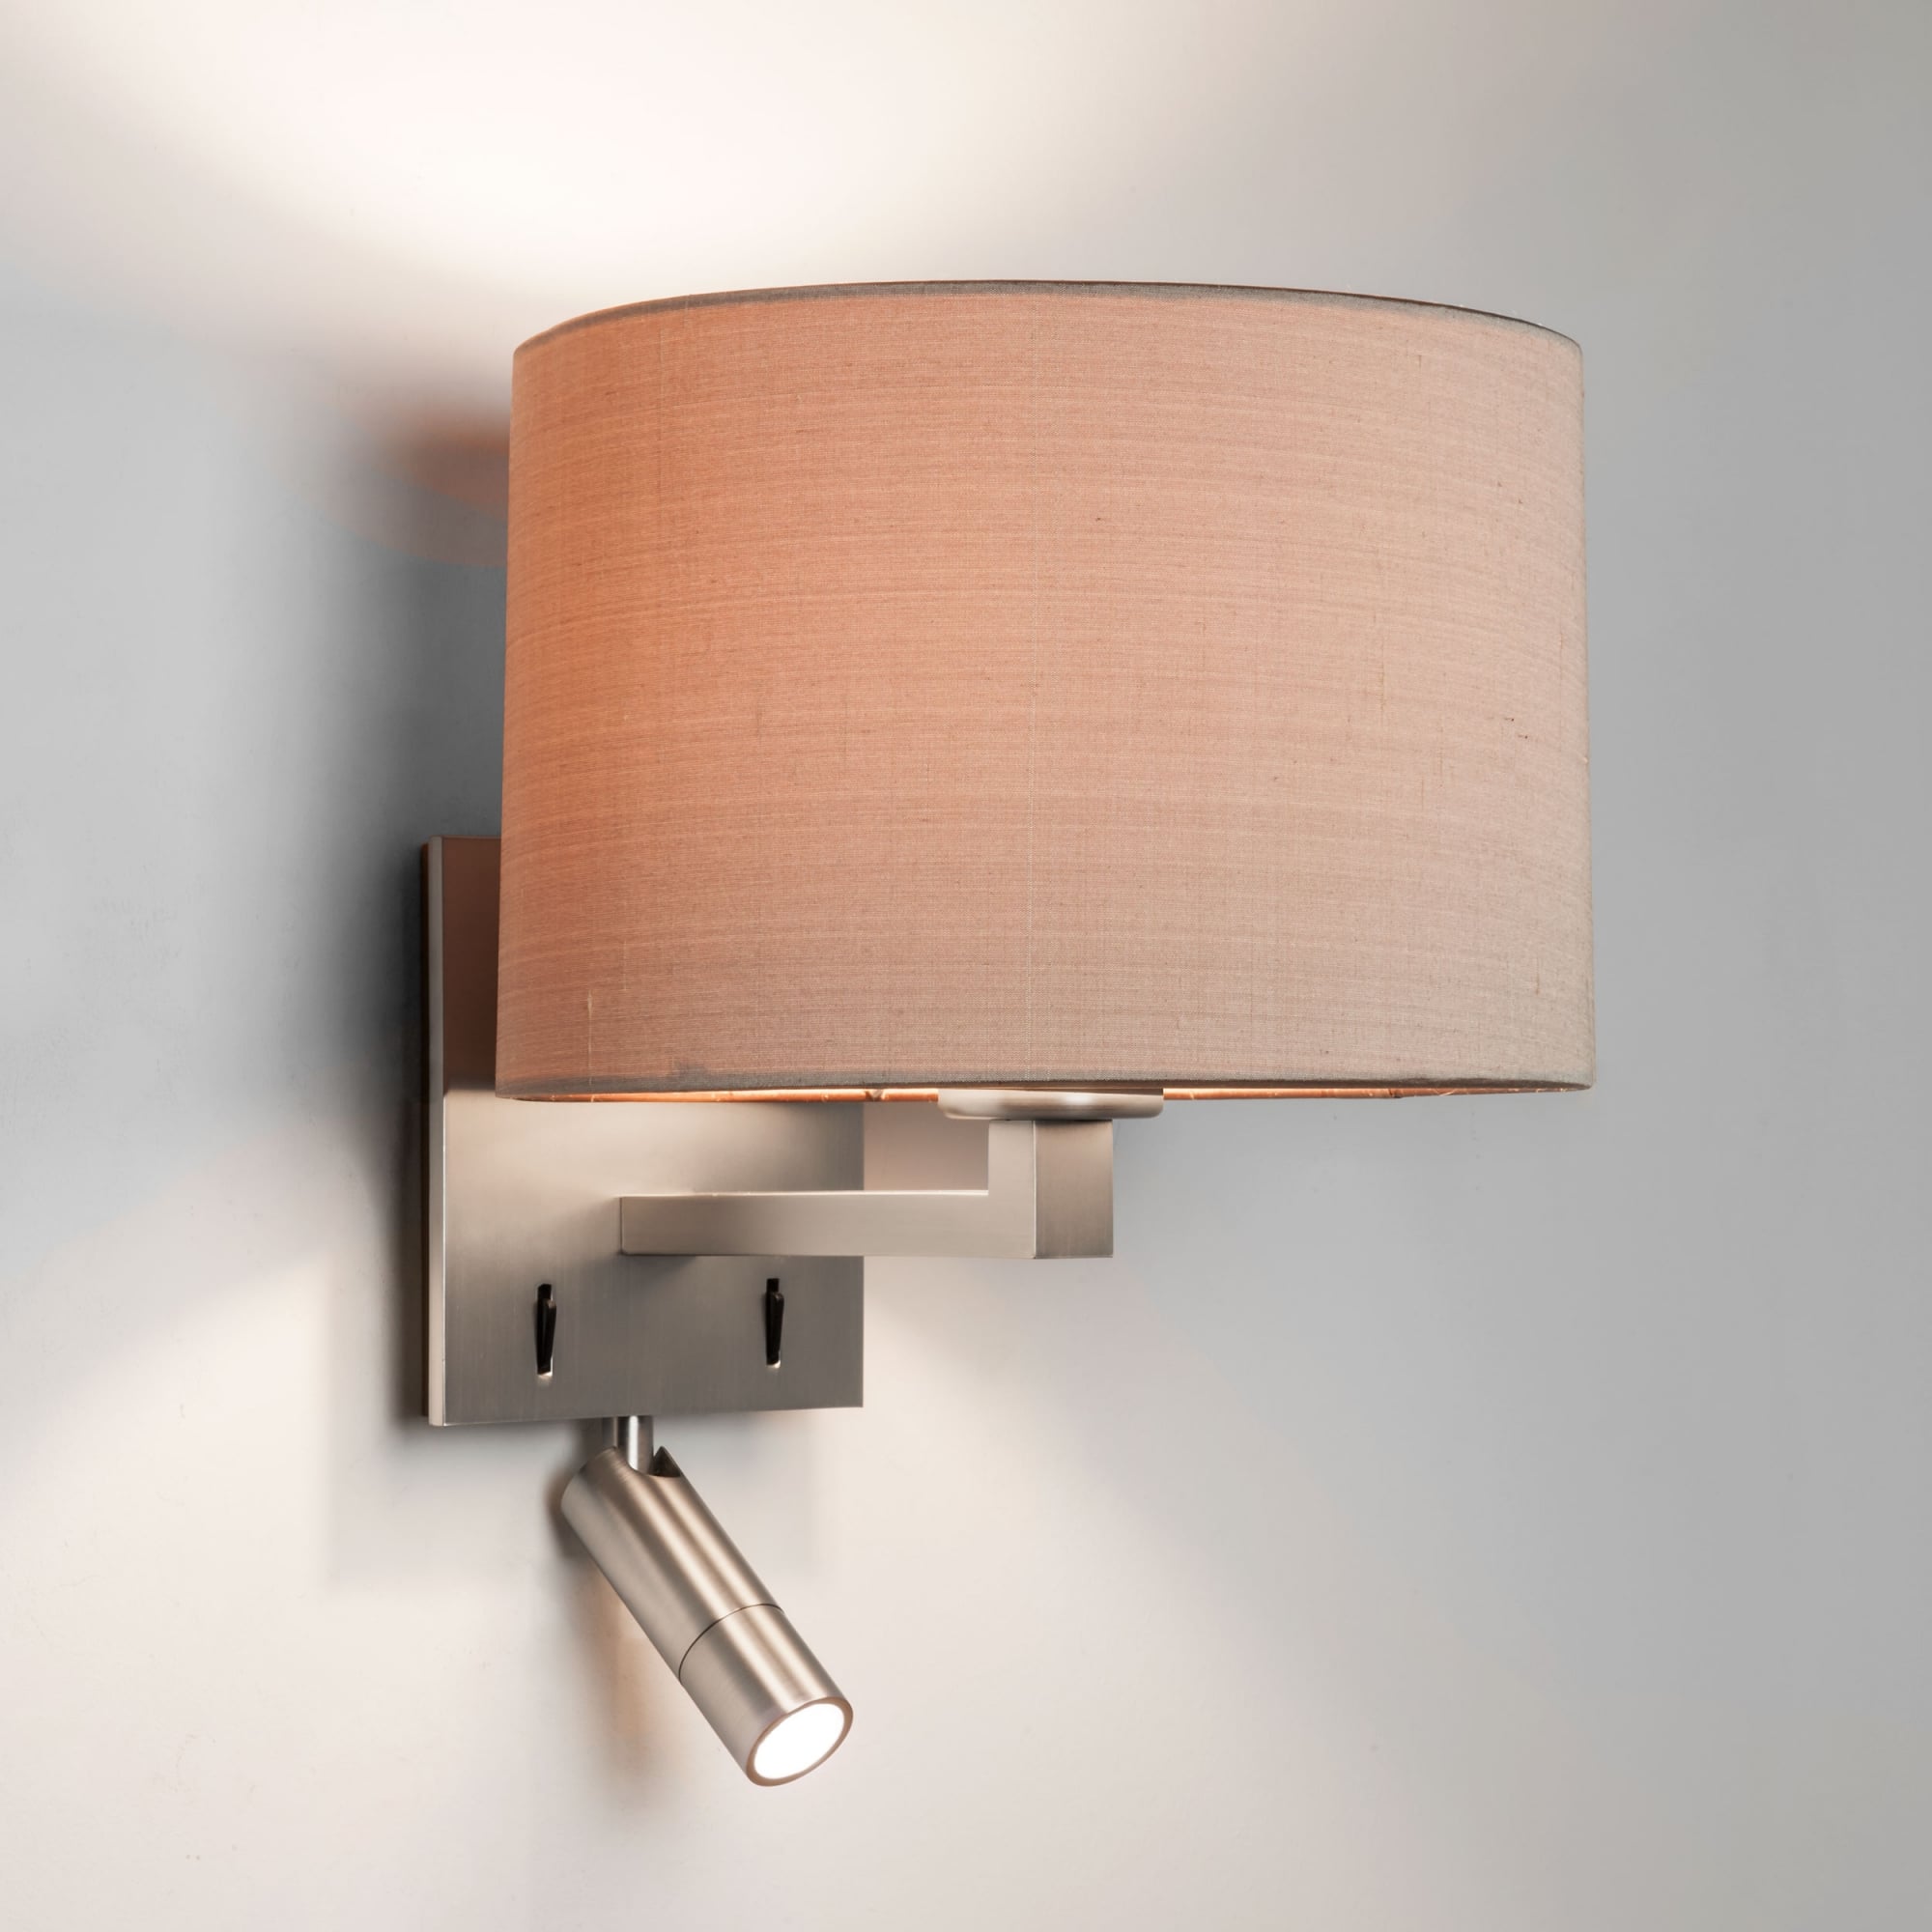 Azumi Modern Matt Nickel Bedroom Wall Light with LED Reading Spotlight